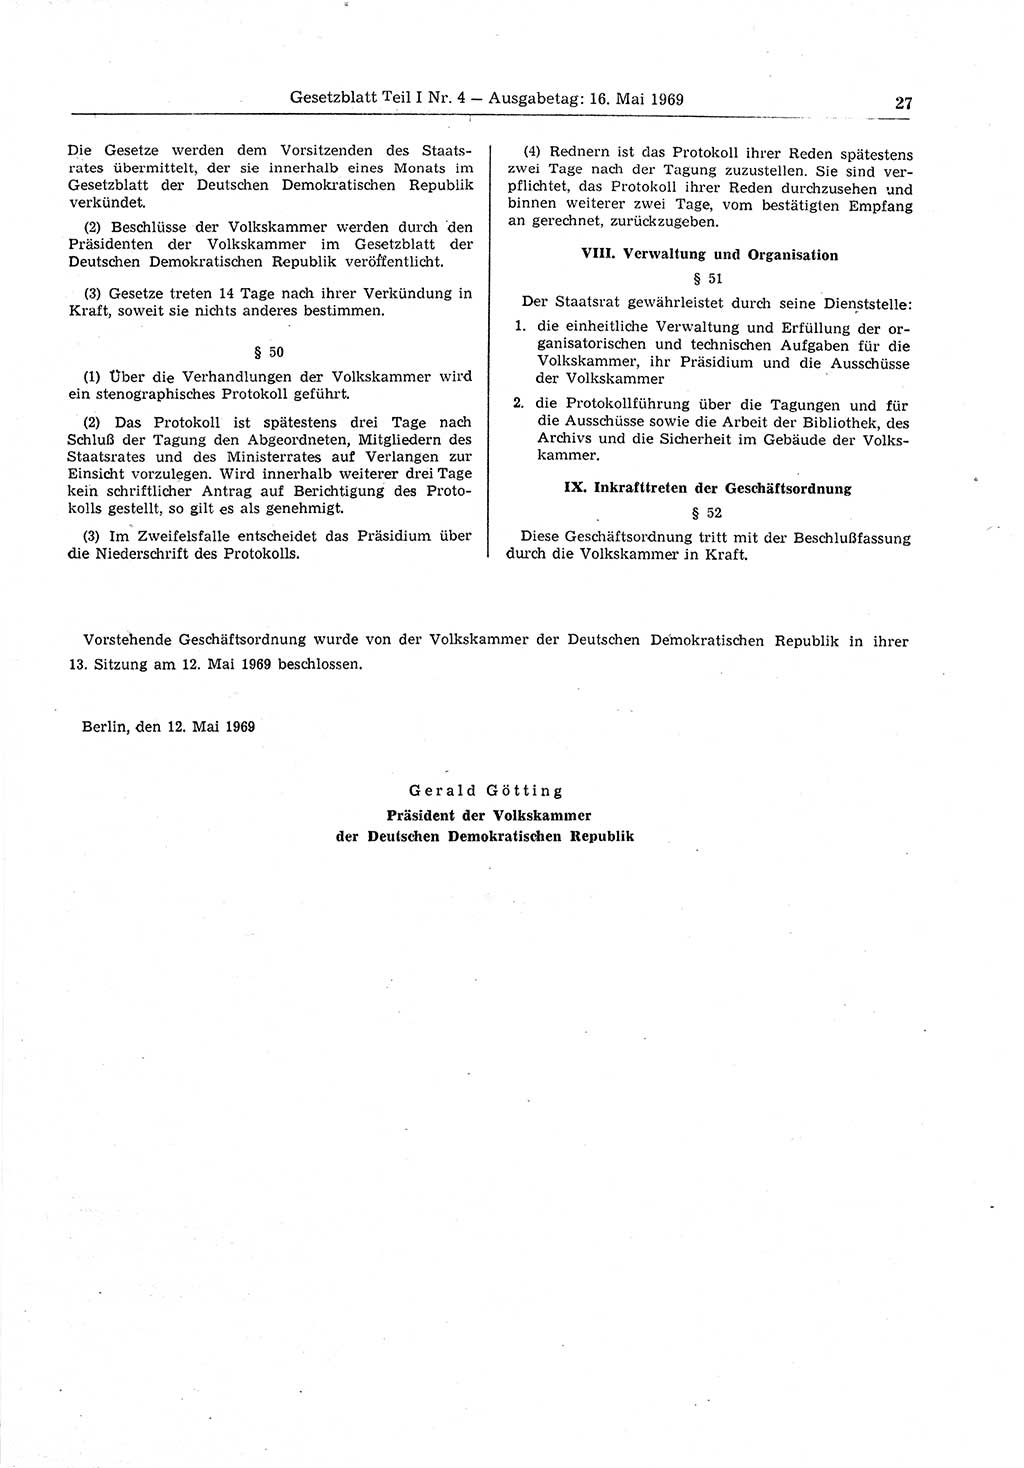 Gesetzblatt (GBl.) der Deutschen Demokratischen Republik (DDR) Teil Ⅰ 1969, Seite 27 (GBl. DDR Ⅰ 1969, S. 27)